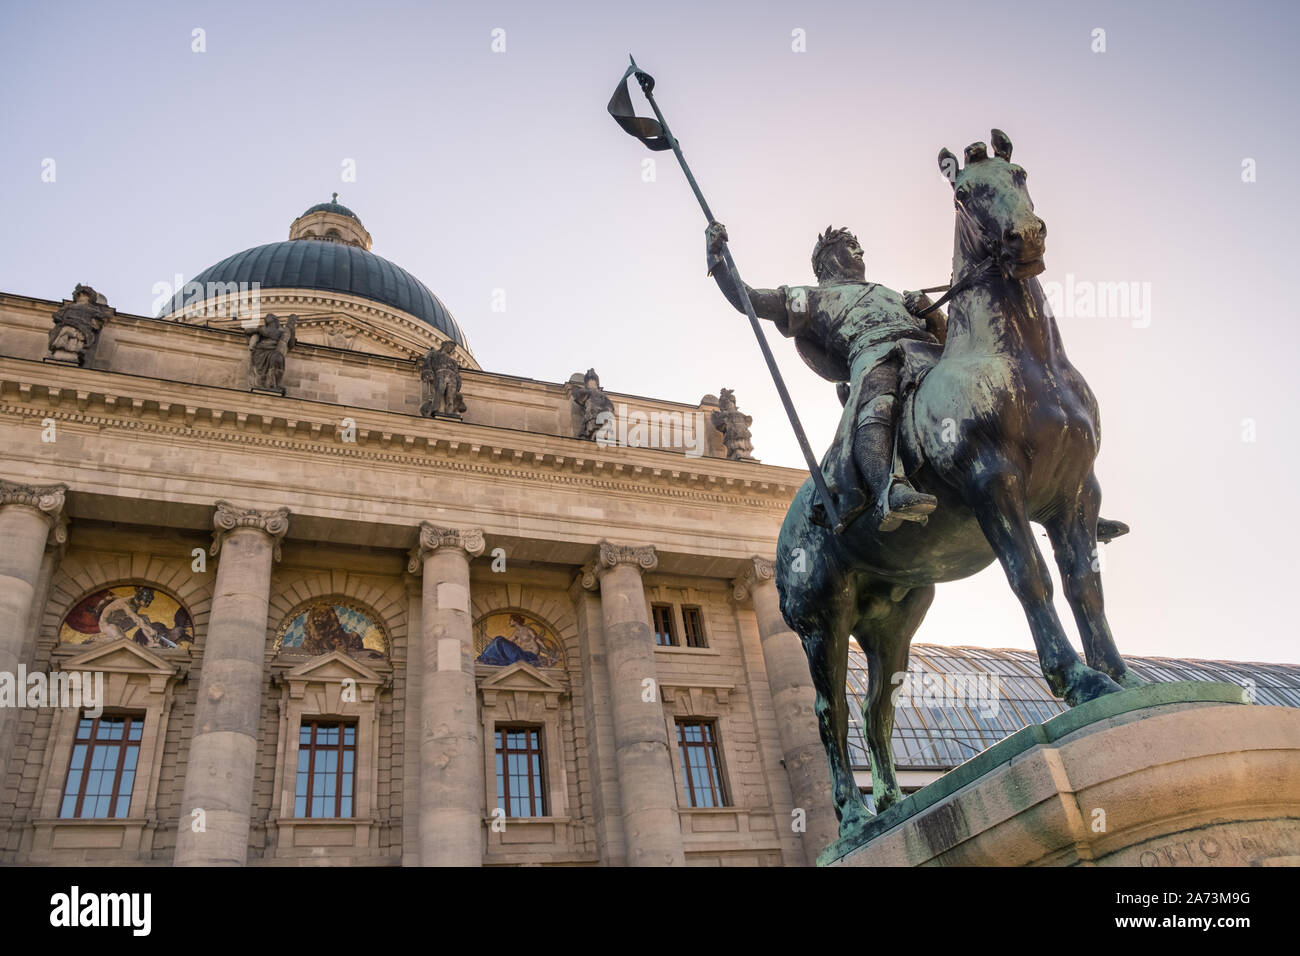 Munich, Bavaria, Germany. Statue of Otto von Wittelsbach in front of the Bayerische Staatskanzlei (Bavarian State Chancellery) building. Stock Photo